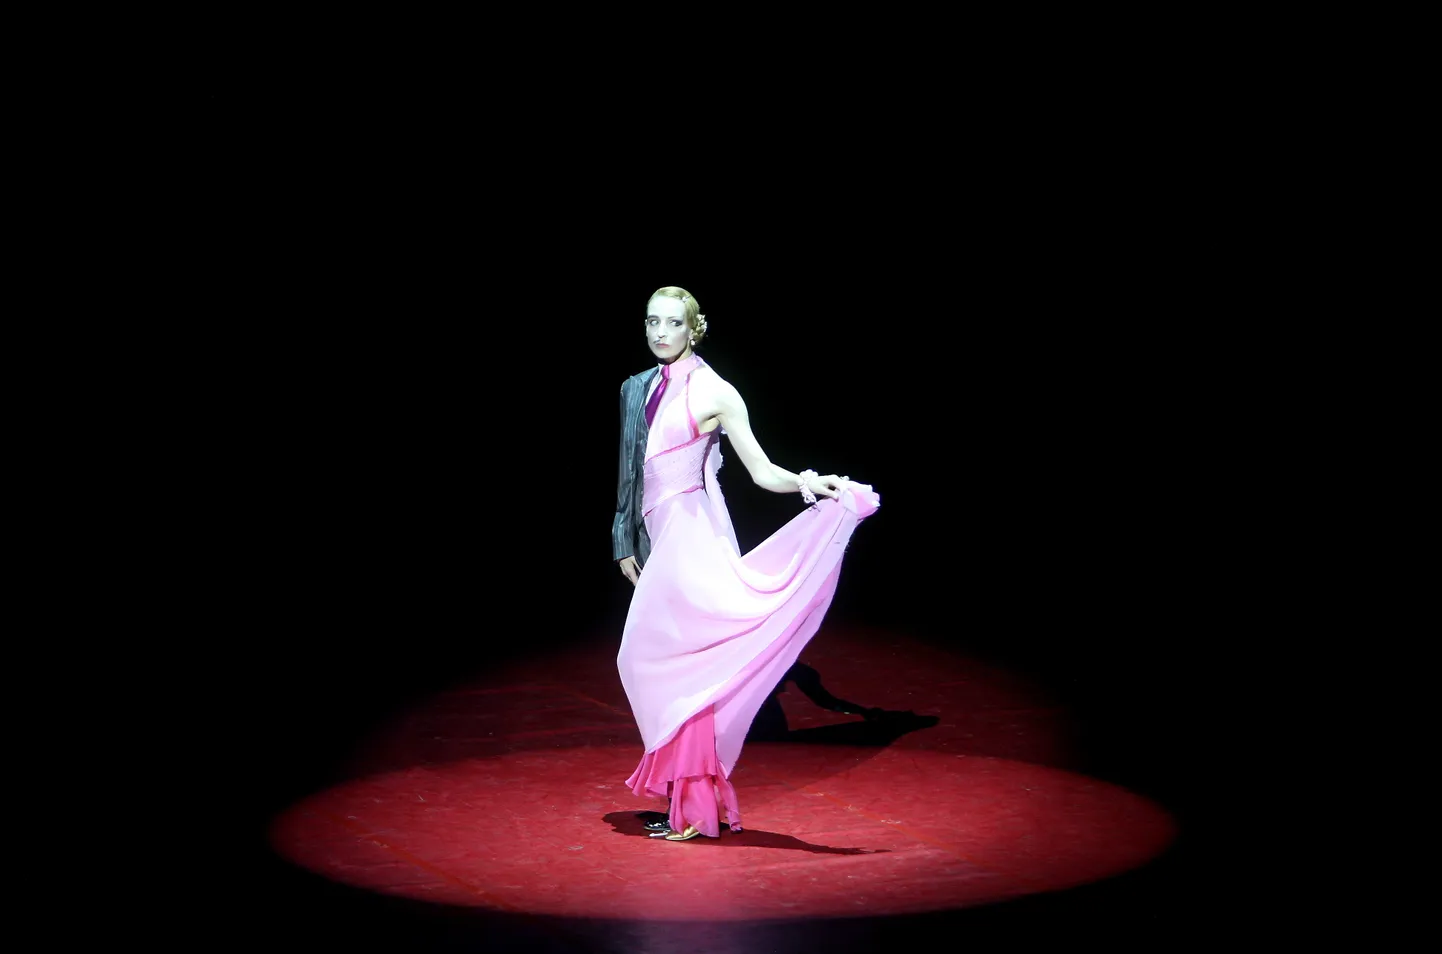 Krievijas tautas māksliniece, Lielā teātra prīma Ilze Liepa uzstājas sava tēva - leģendārā baletdejotāja Māra Liepas - piemiņai veltītā baleta vakarā Latvijas Nacionālajā operā.